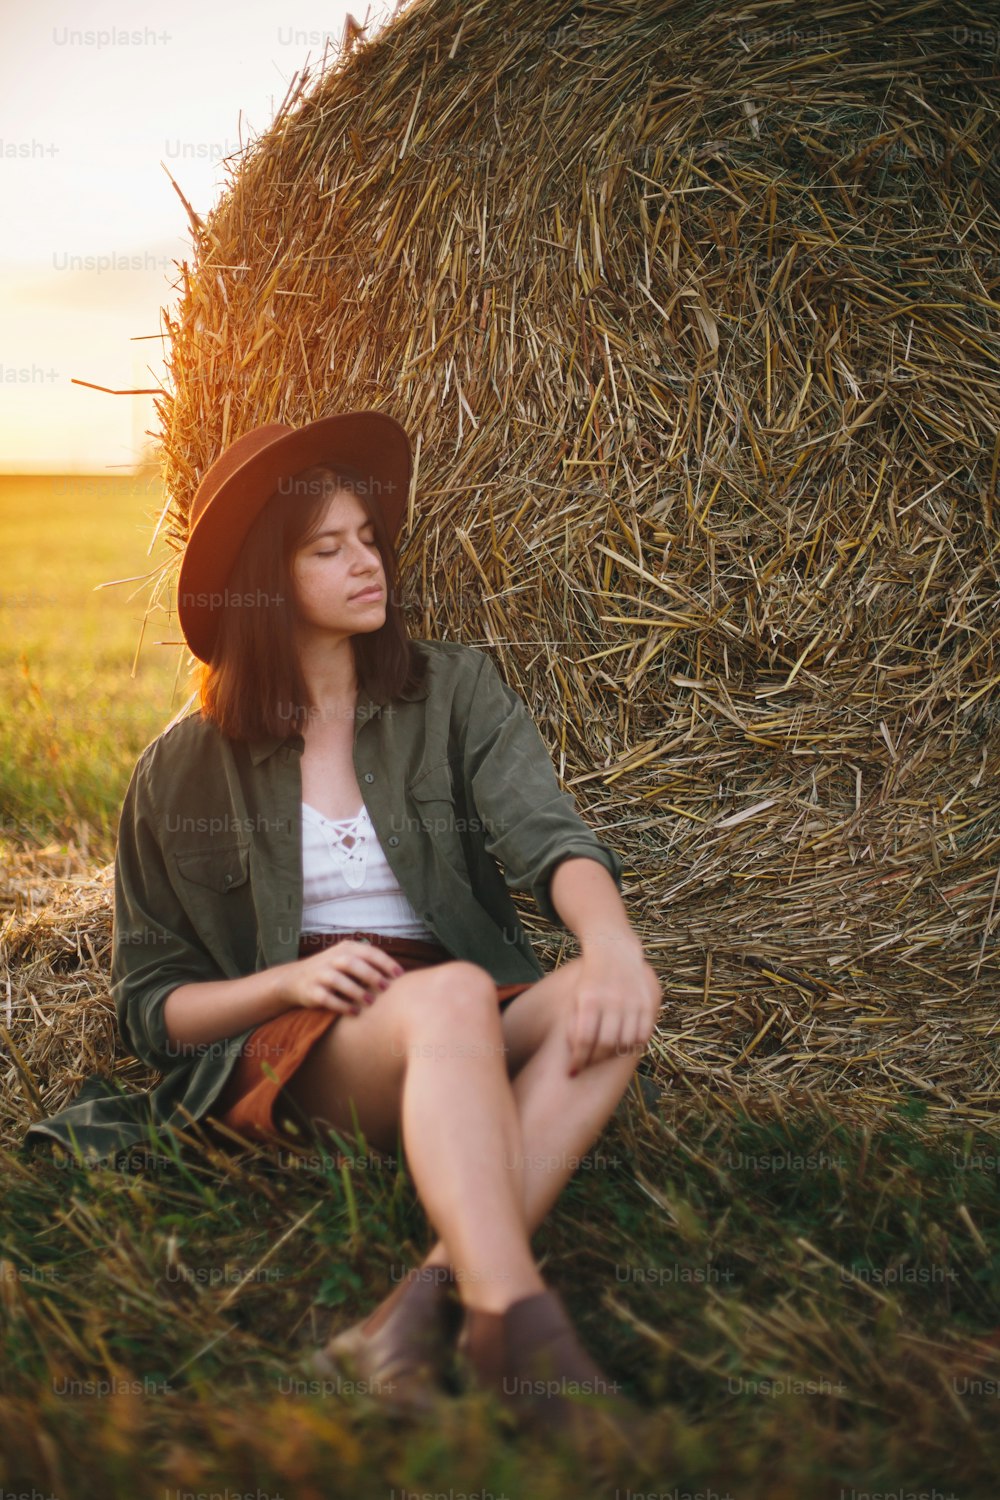 Hermosa mujer elegante con sombrero sentada en pajares disfrutando de la noche en el campo soleado del verano. Momento de tranquilidad atmosférica en el campo. Hembra joven relajándose en la paca de heno en la puesta del sol cálida